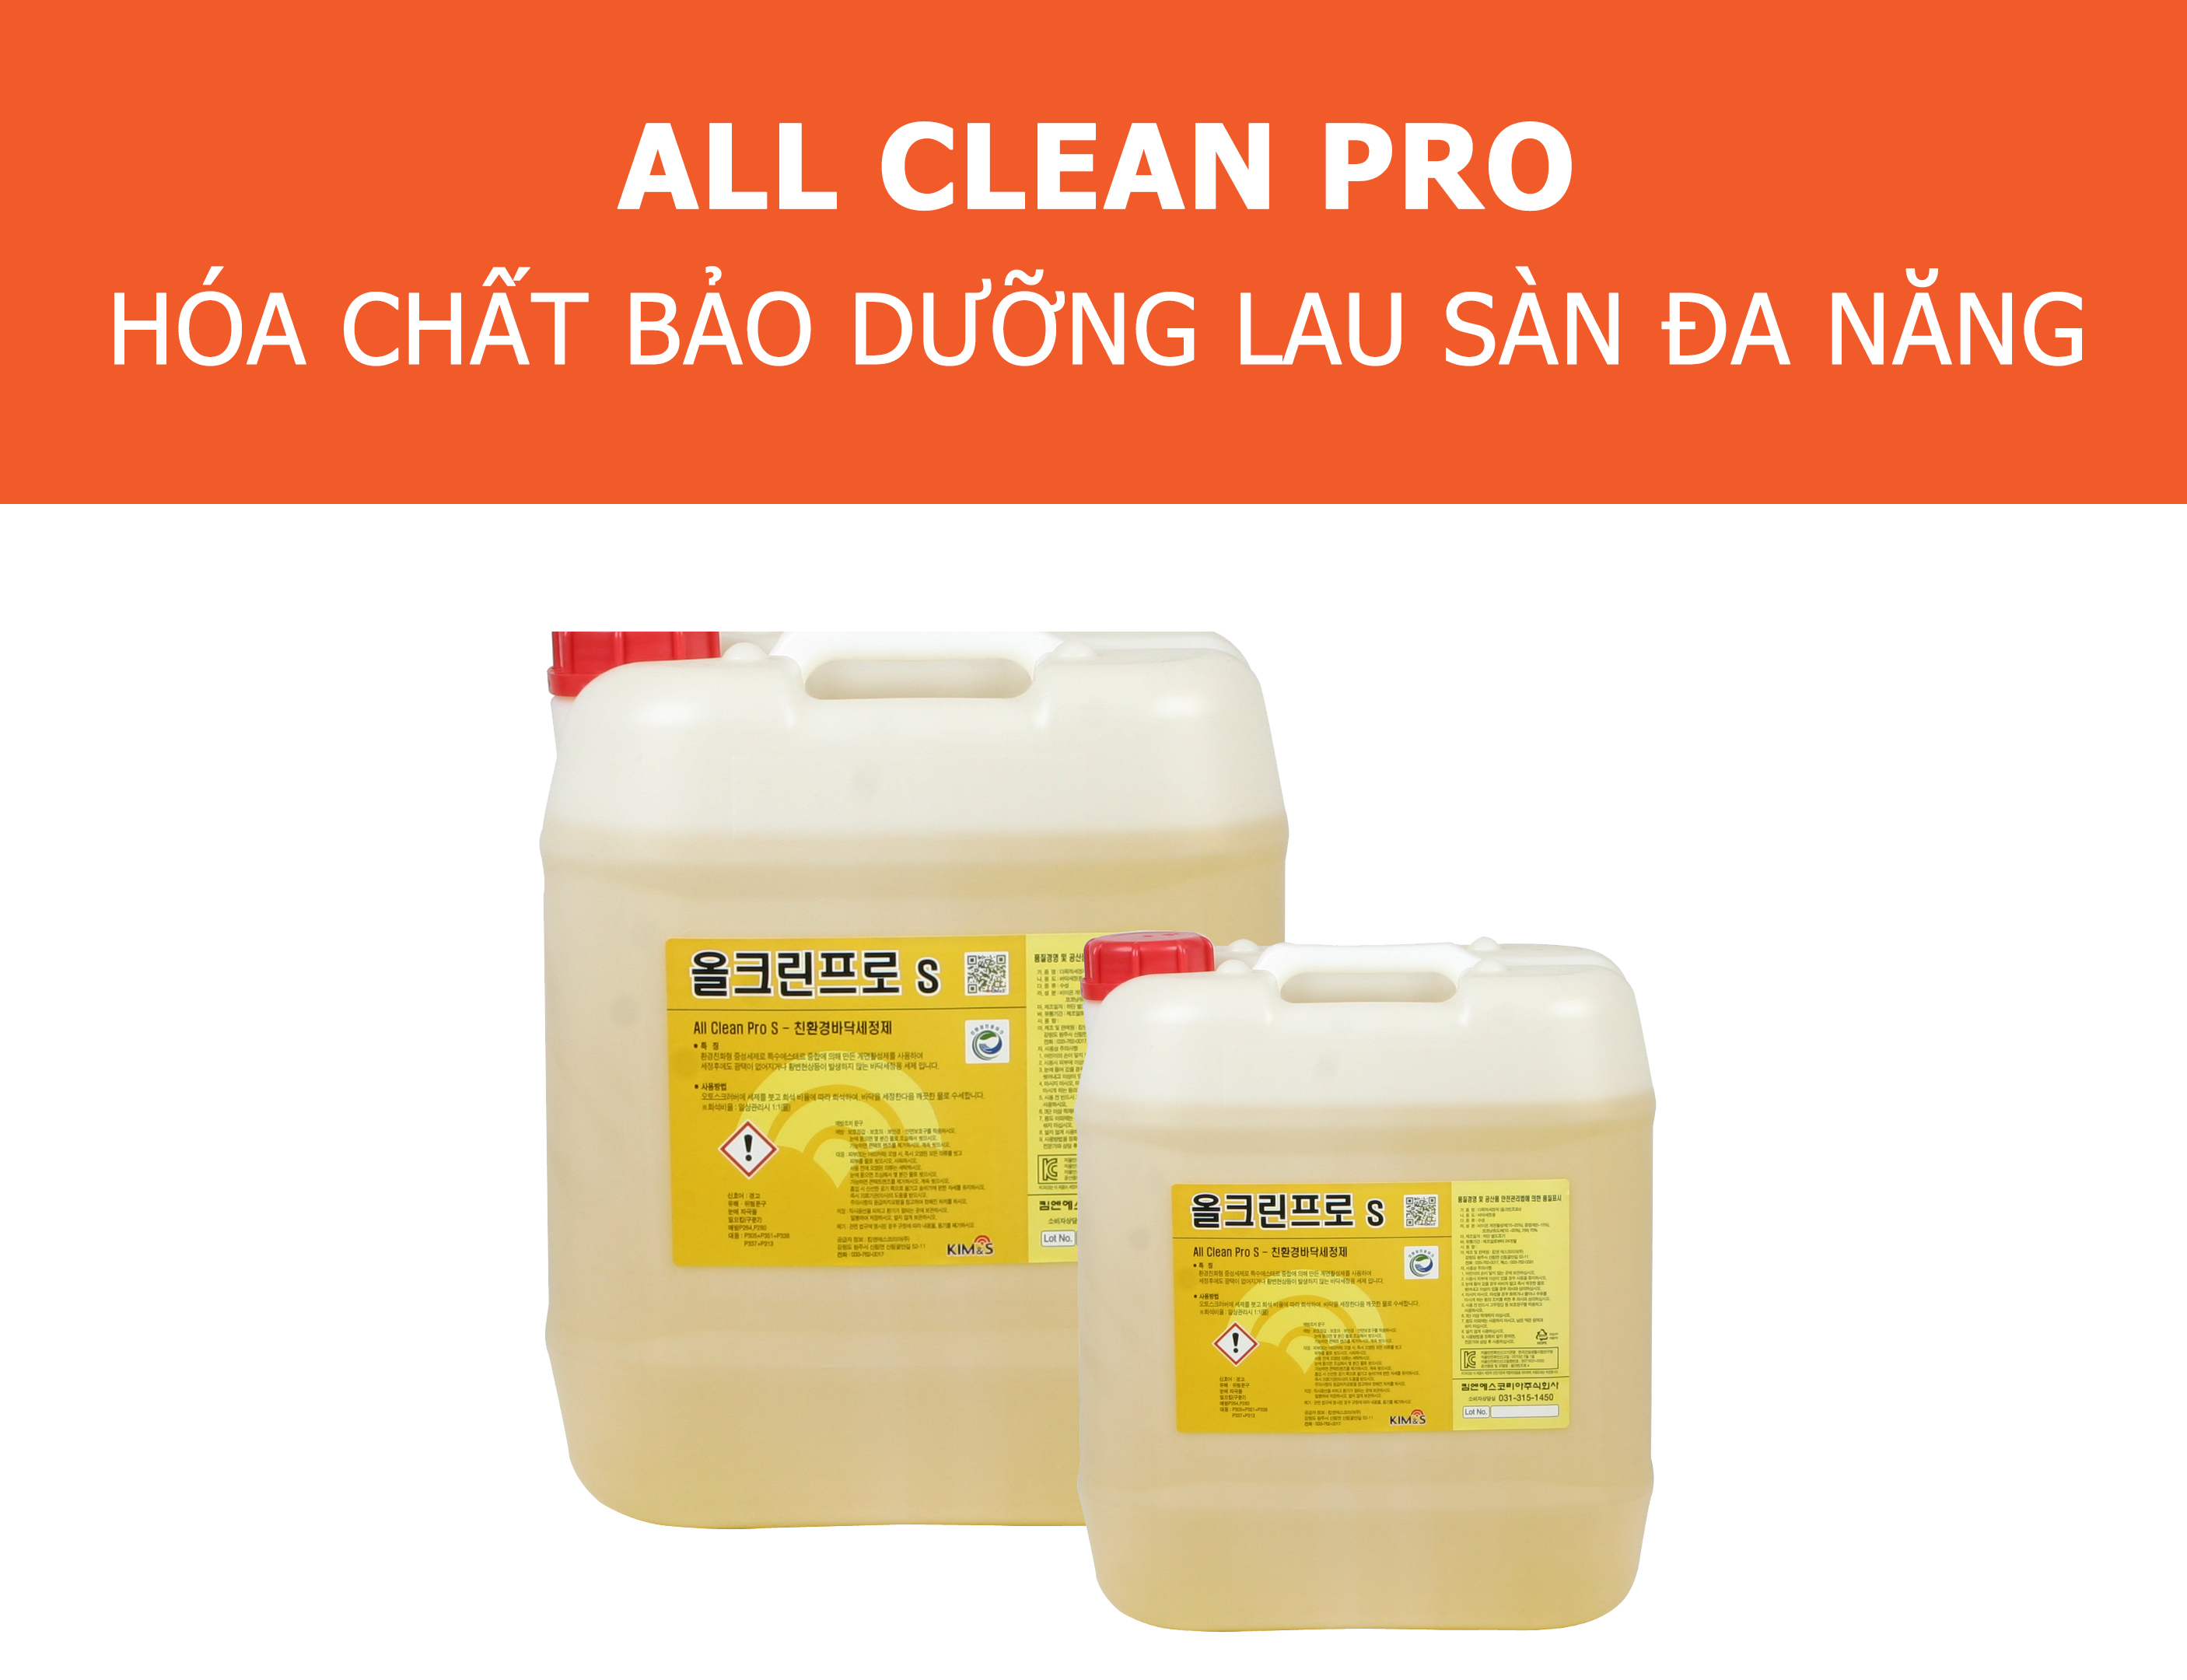 All Clean Pro Hóa chất bảo dưỡng lau sàn đa năng